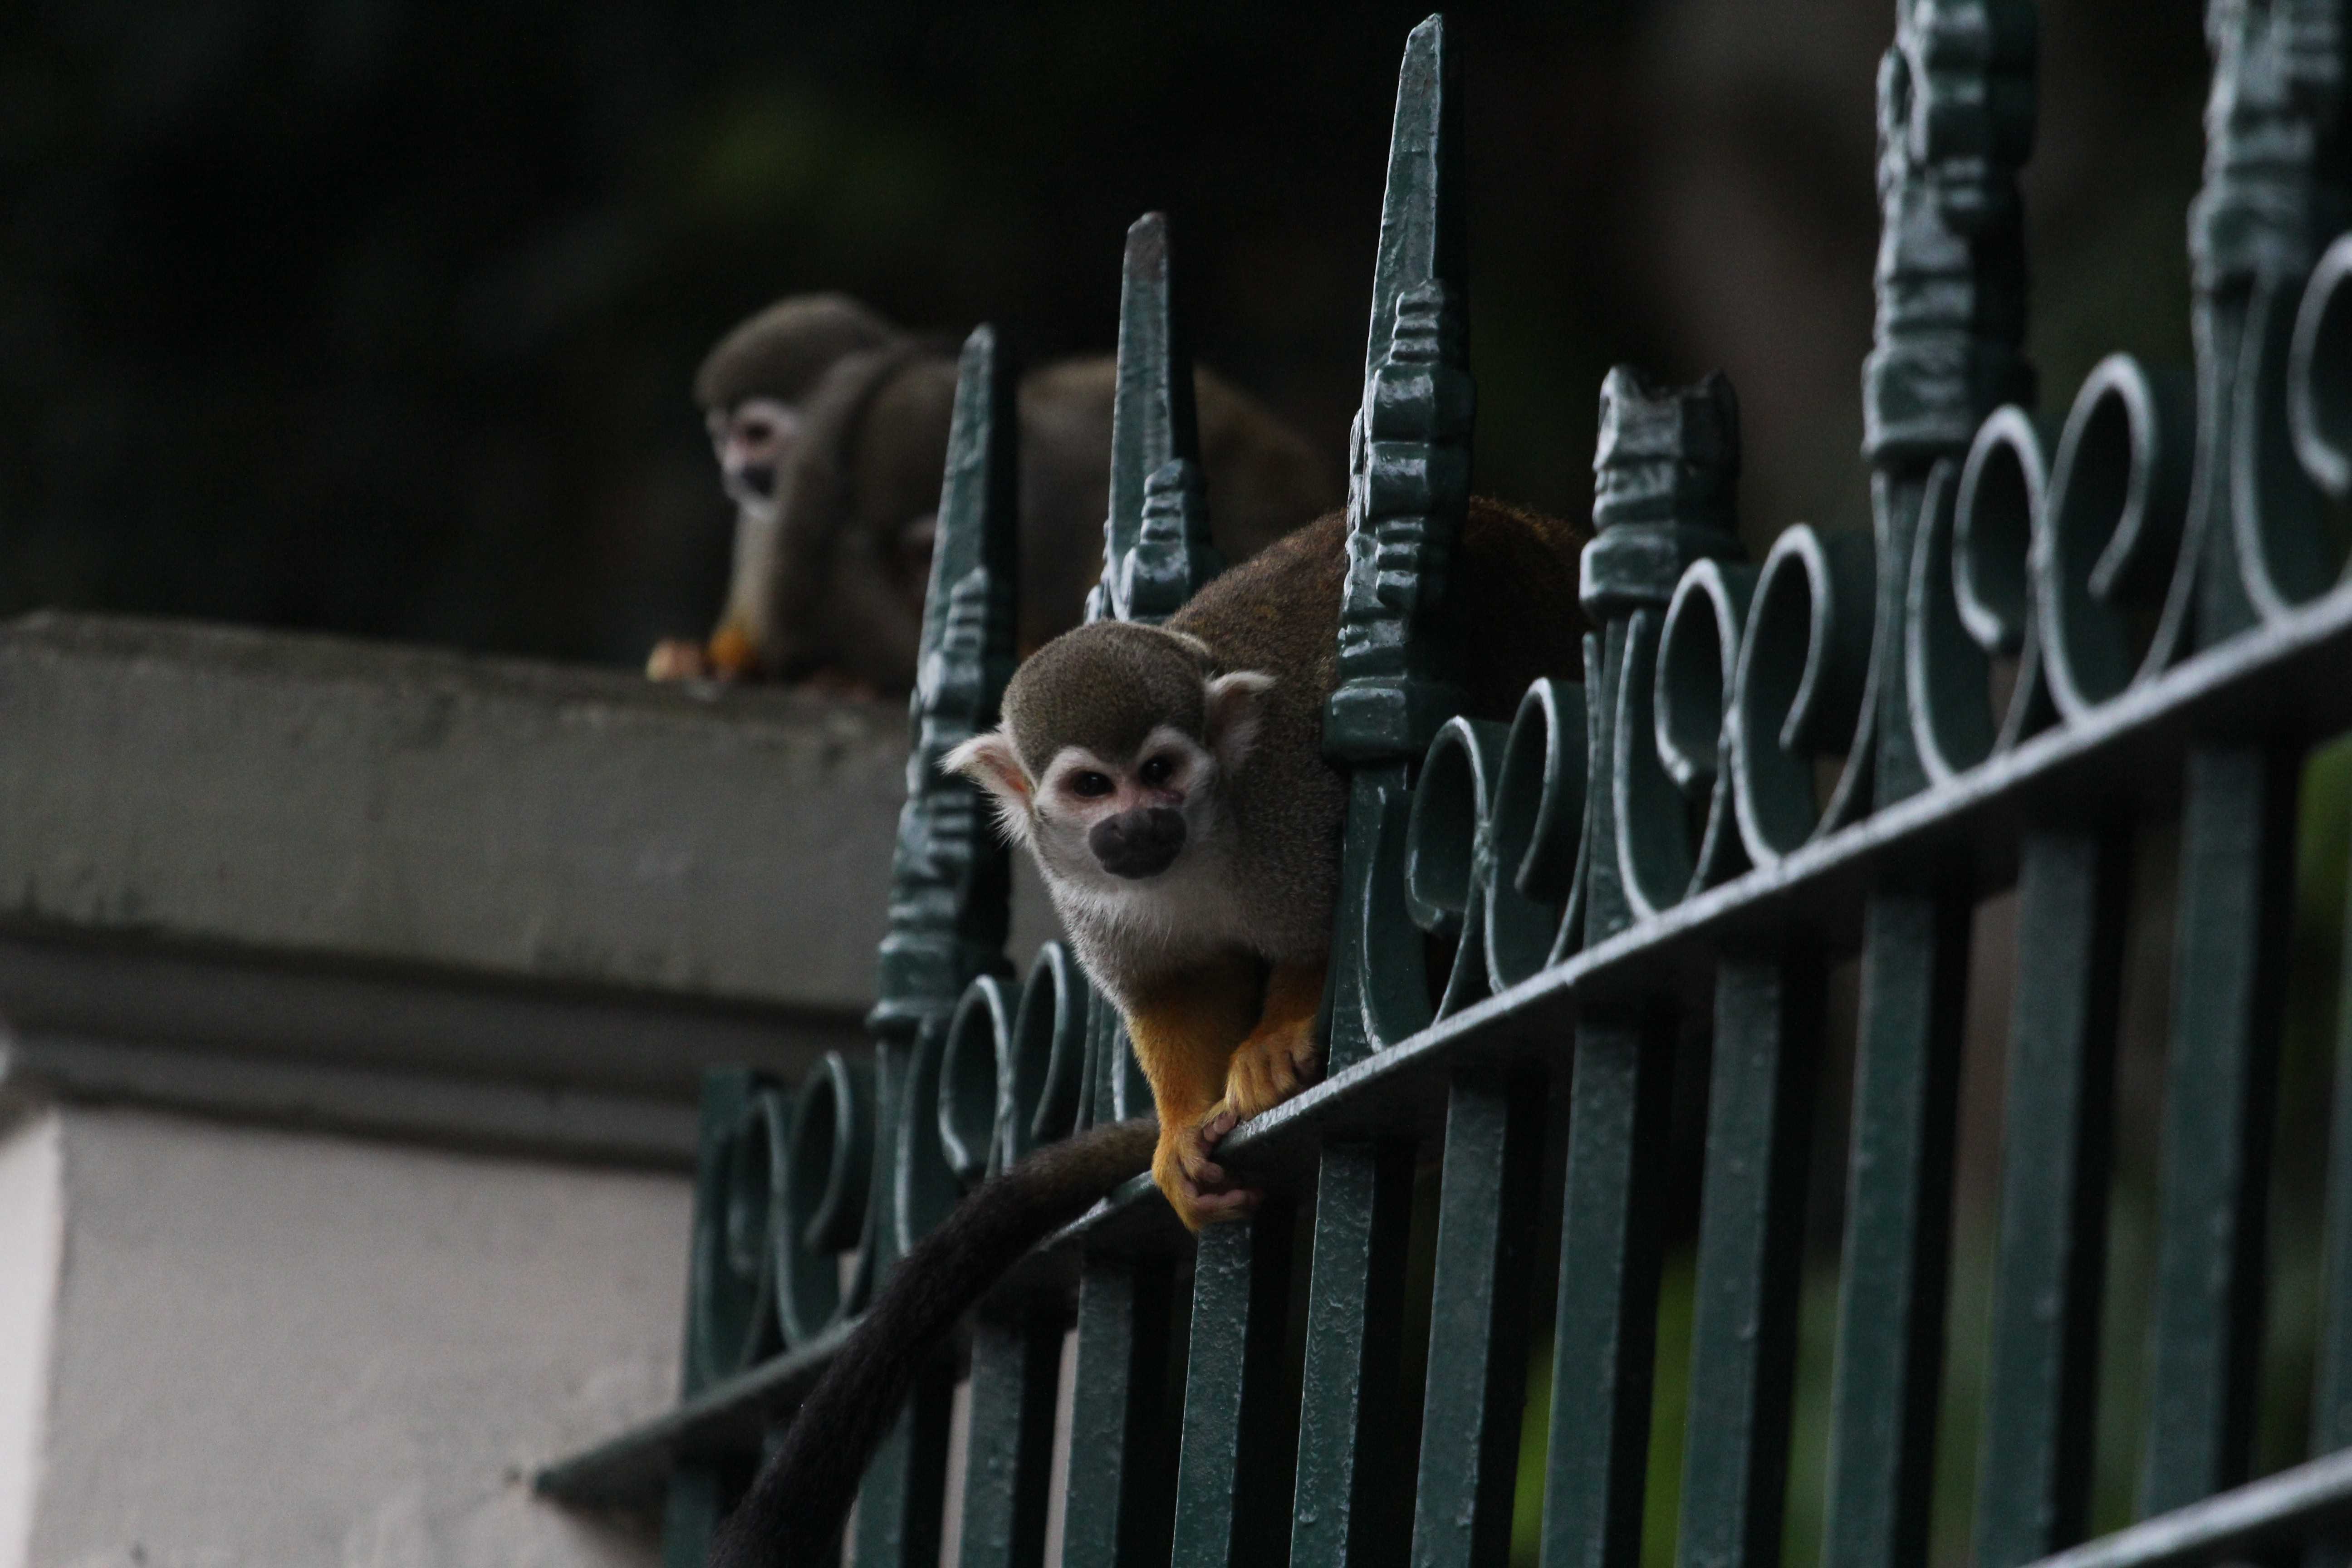 Macacos do Bosque Rodrigues Alves, em Belém, morreram após comerem alimentos contaminados, diz laudo